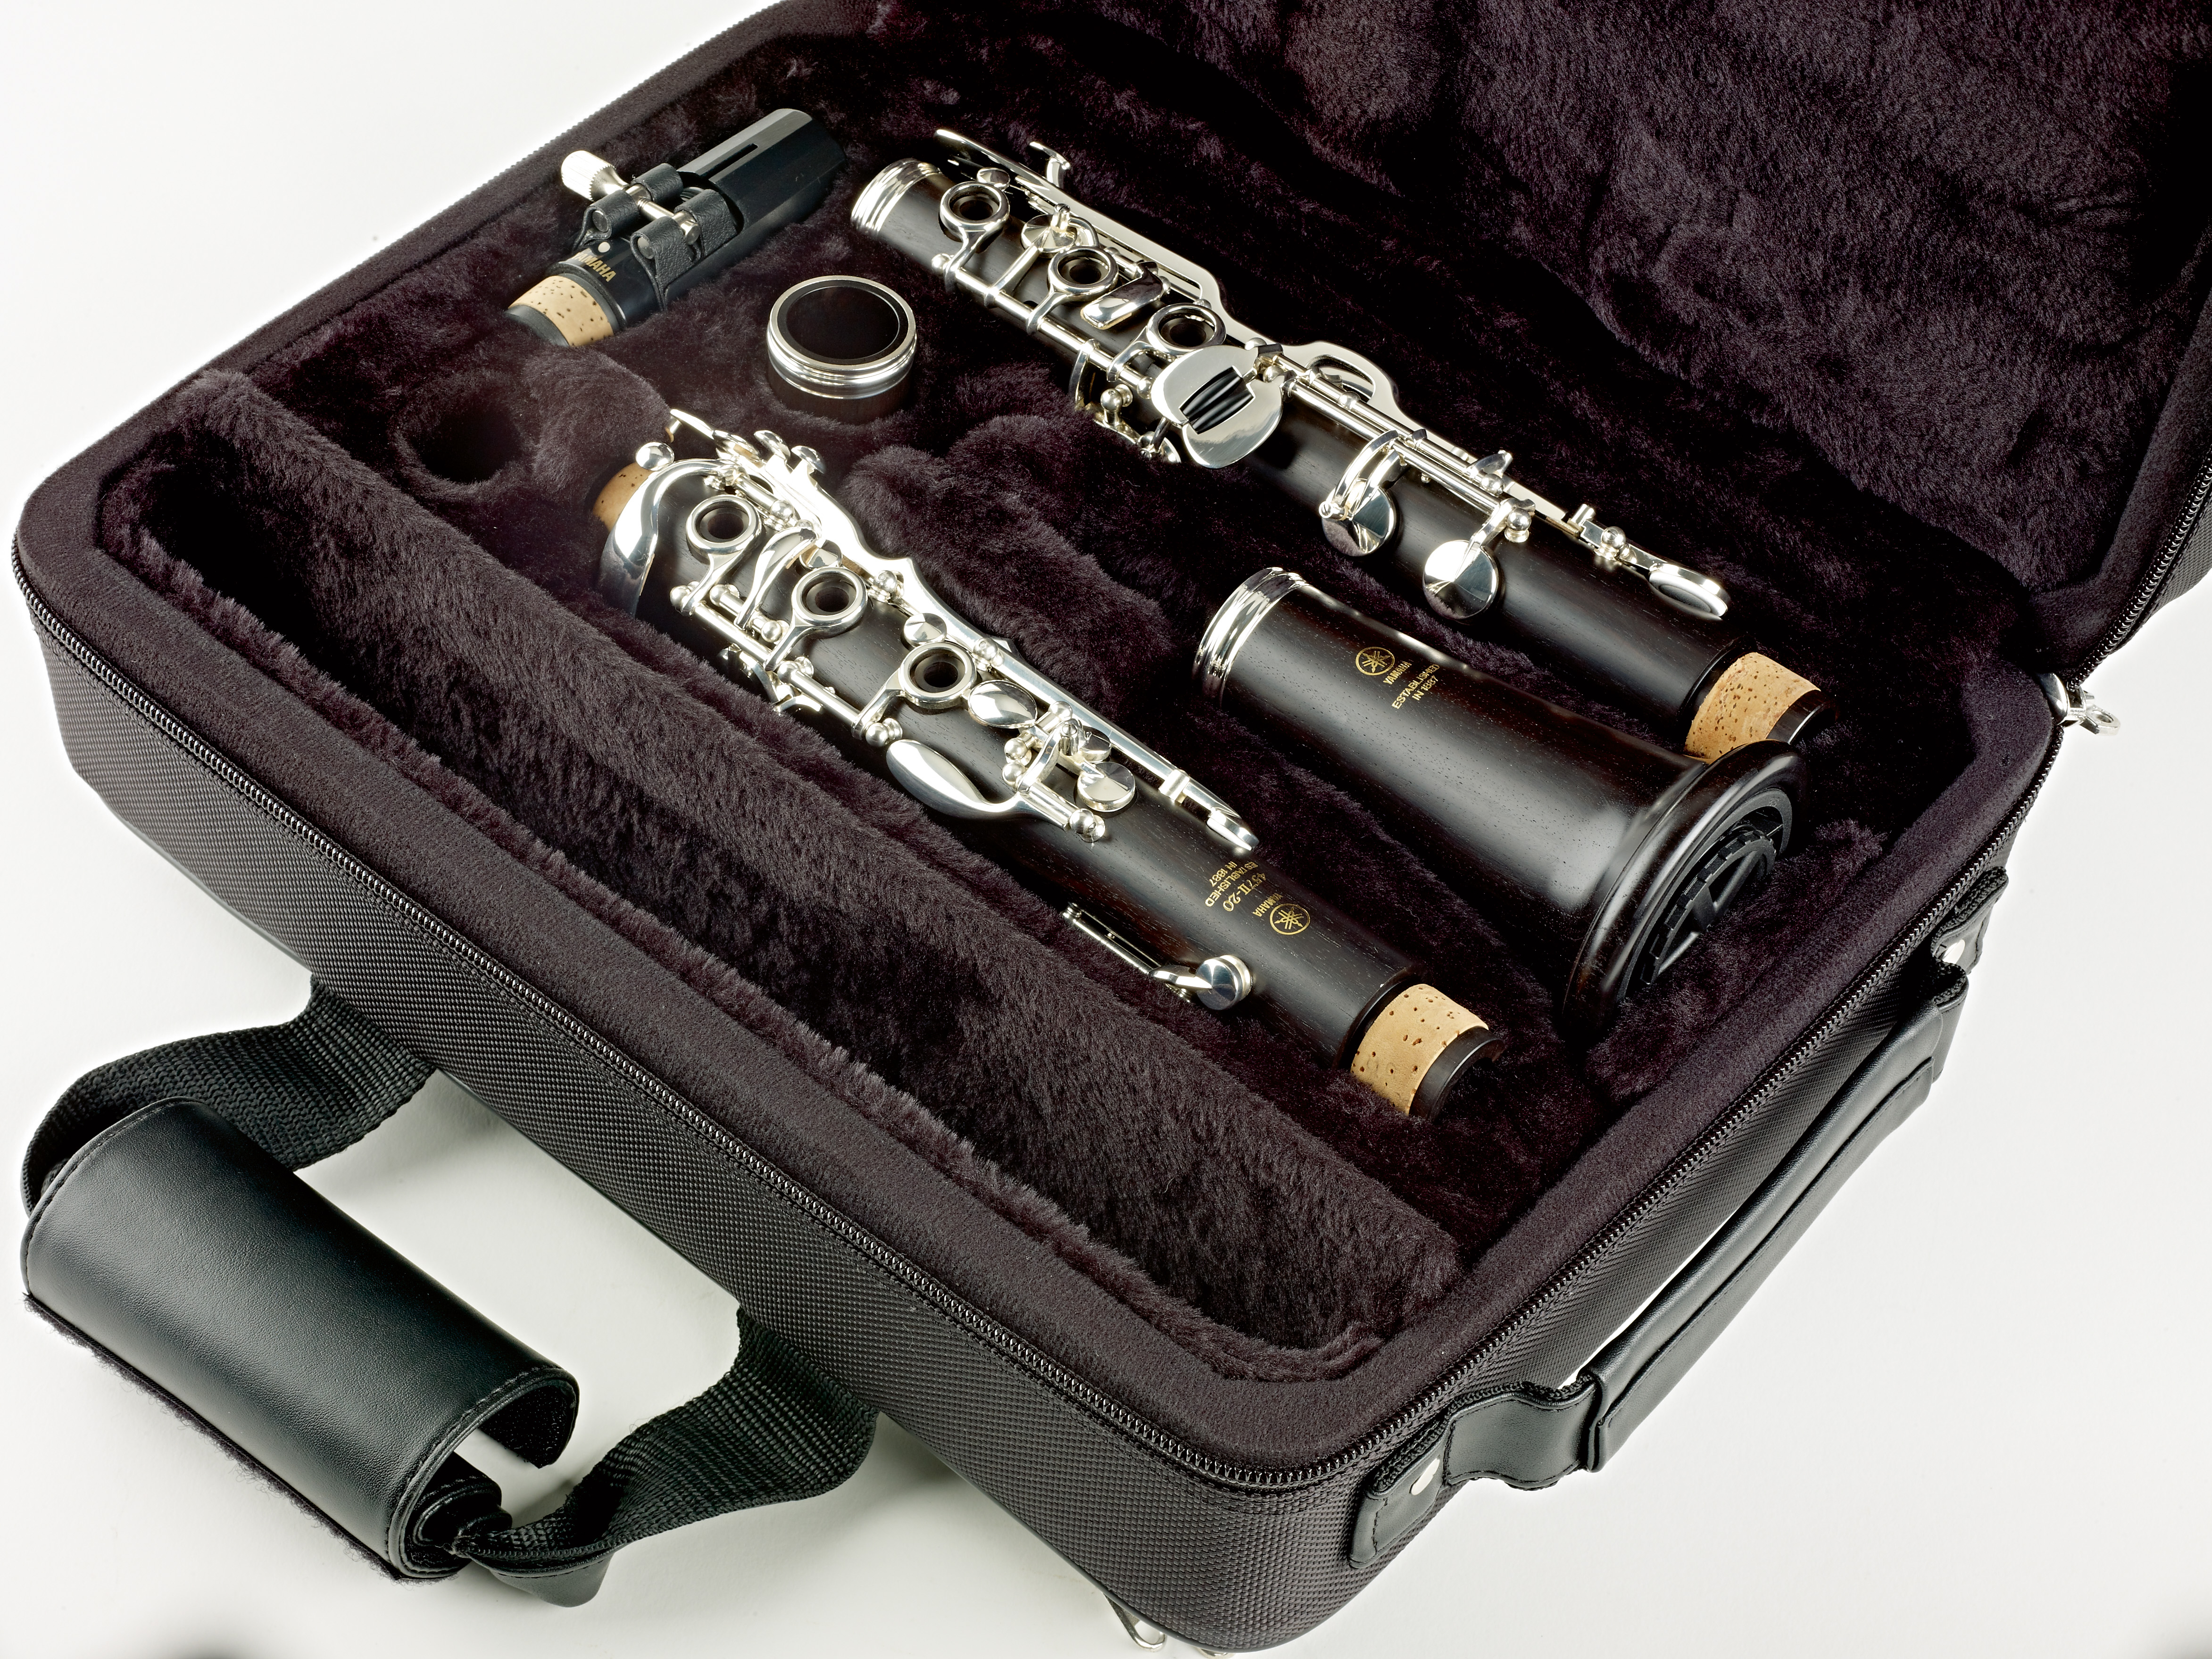 König & Meyer Instrument Stand - Clarinet - 15228